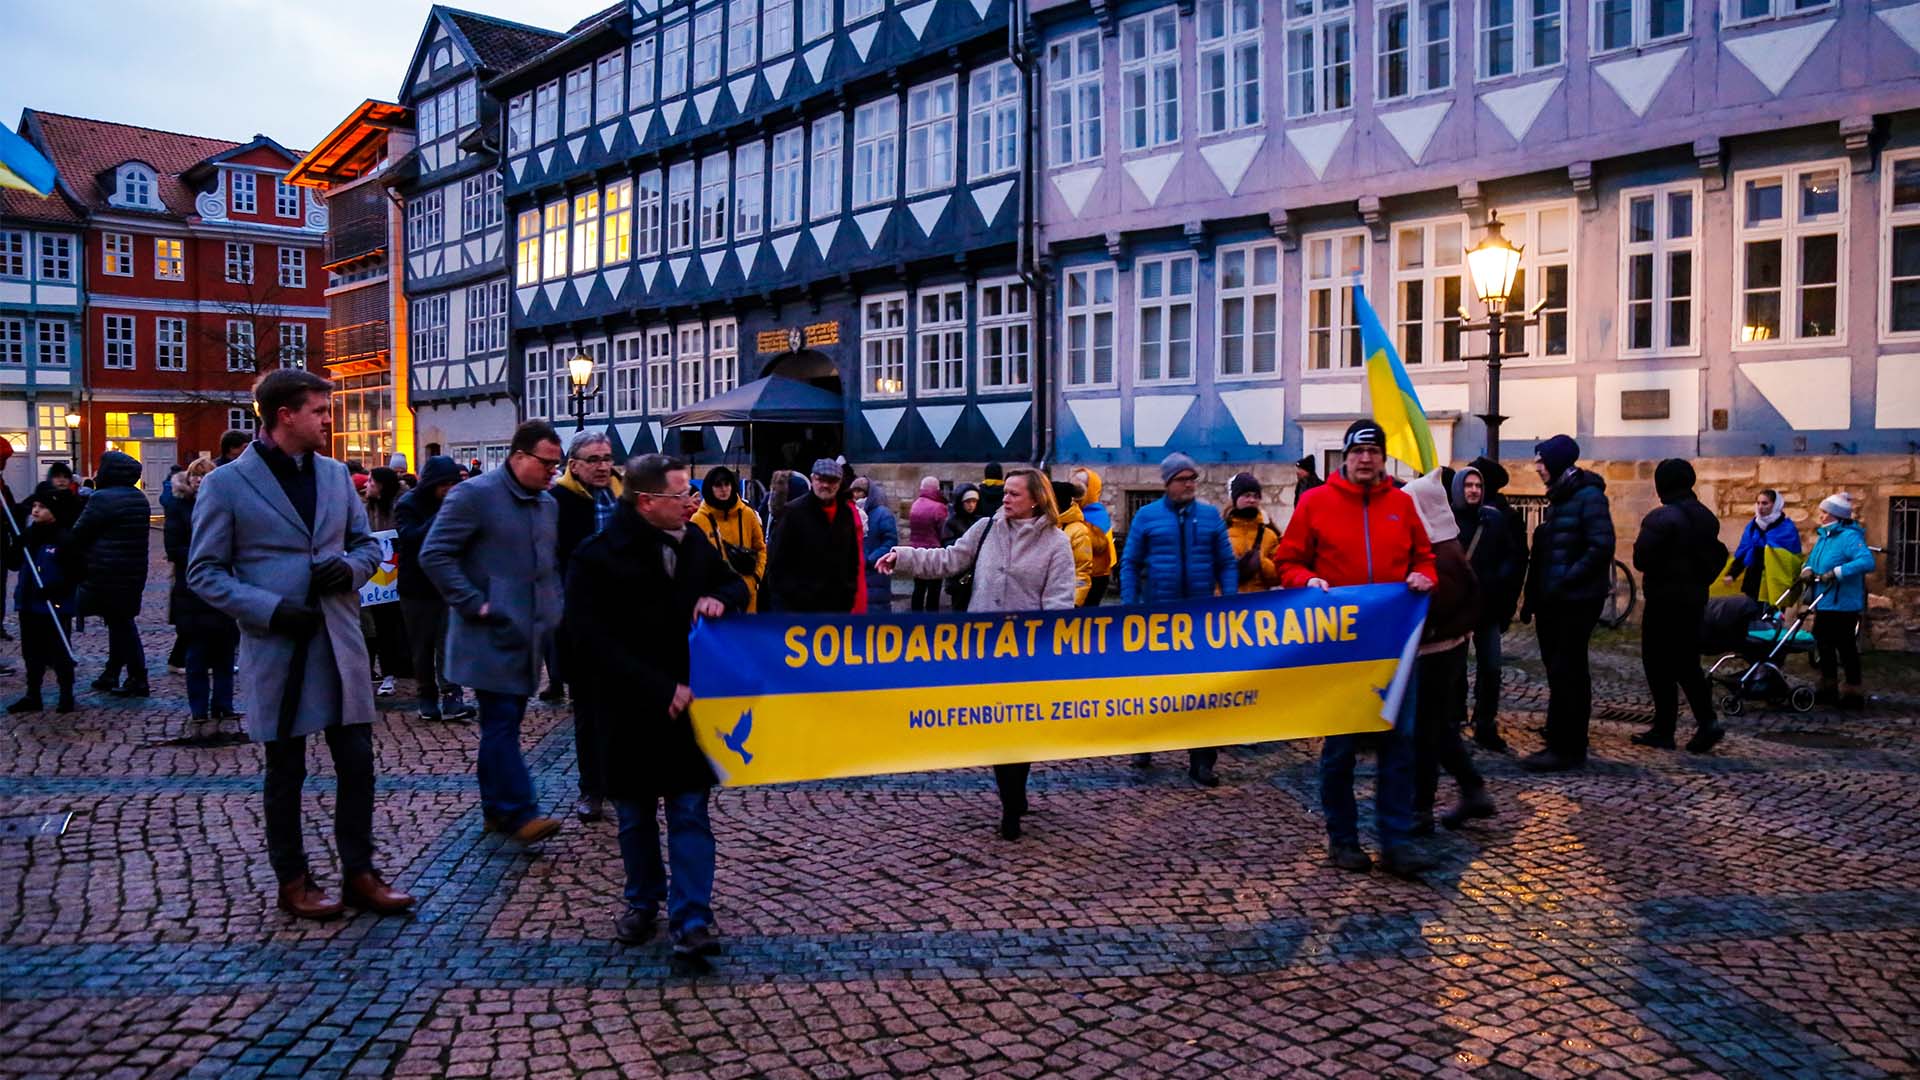 Viele Personen mit Bannern und ukrainischen Flaggen auf dem Stadtmarkt. Dabei ein großes Banner in blau-gelb mit der Aufschrift "Solidarität mit der Ukraine".